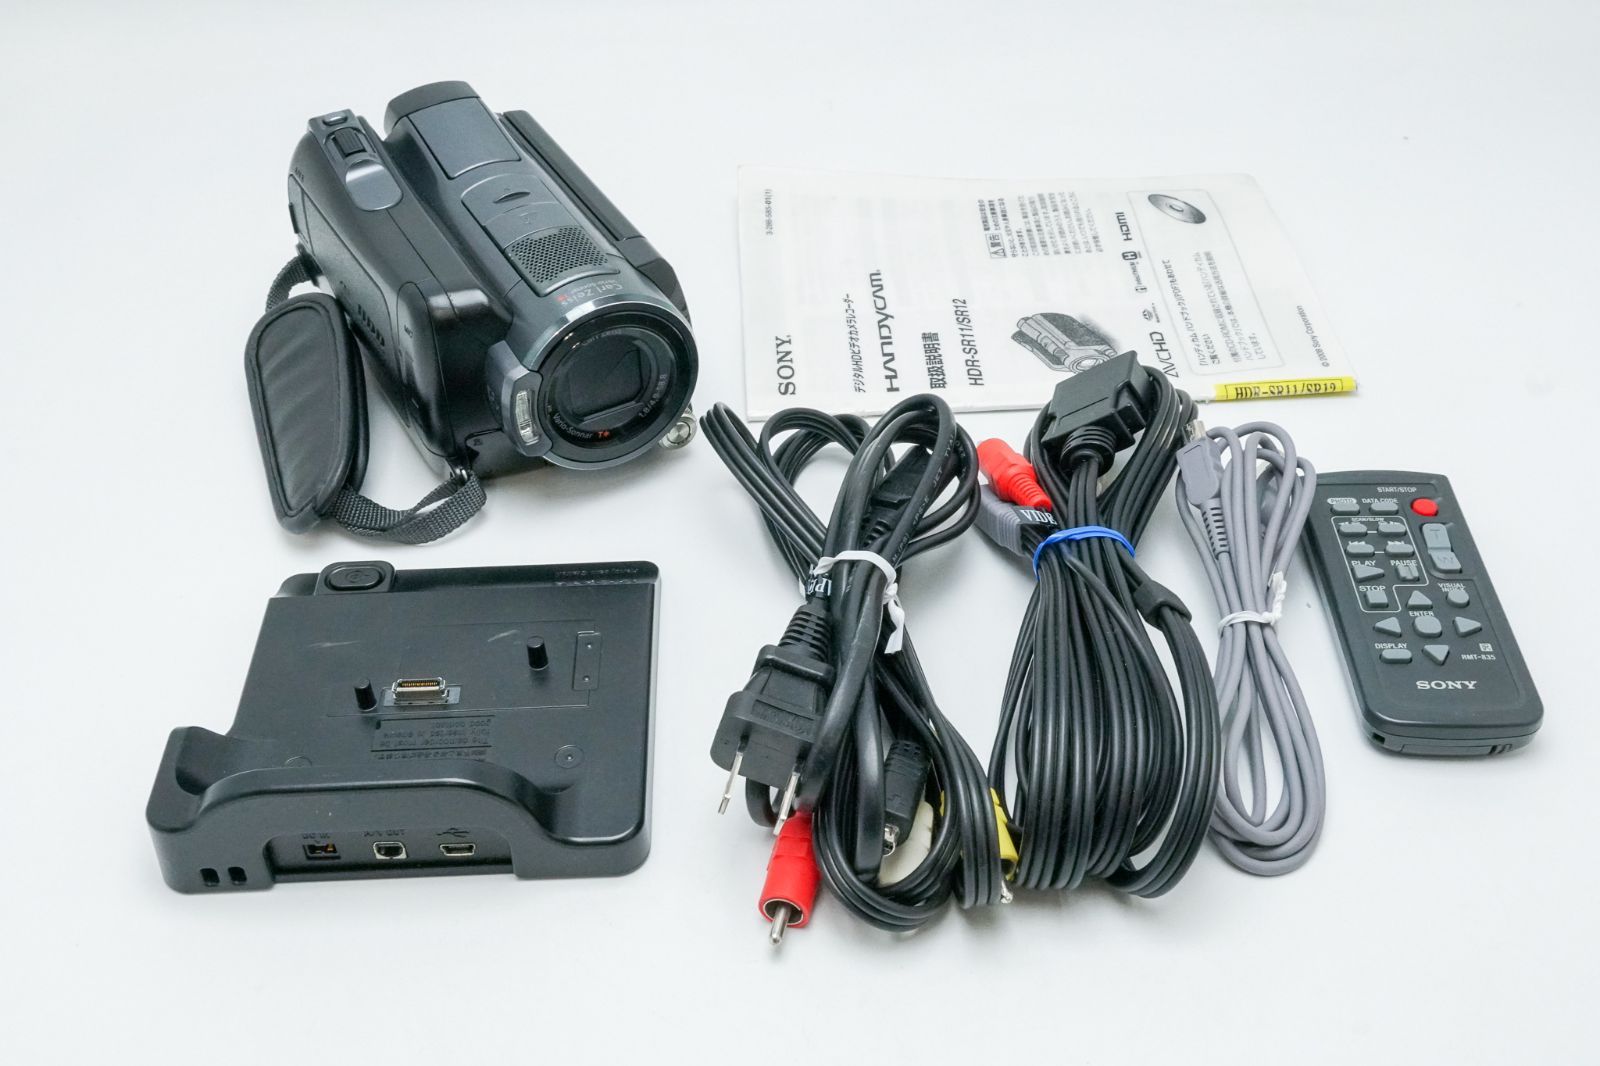 ソニー SONY ビデオカメラ Handycam SR11 内蔵ハードディスク60GB デジタルハイビジョン HDR-SR11(品) 